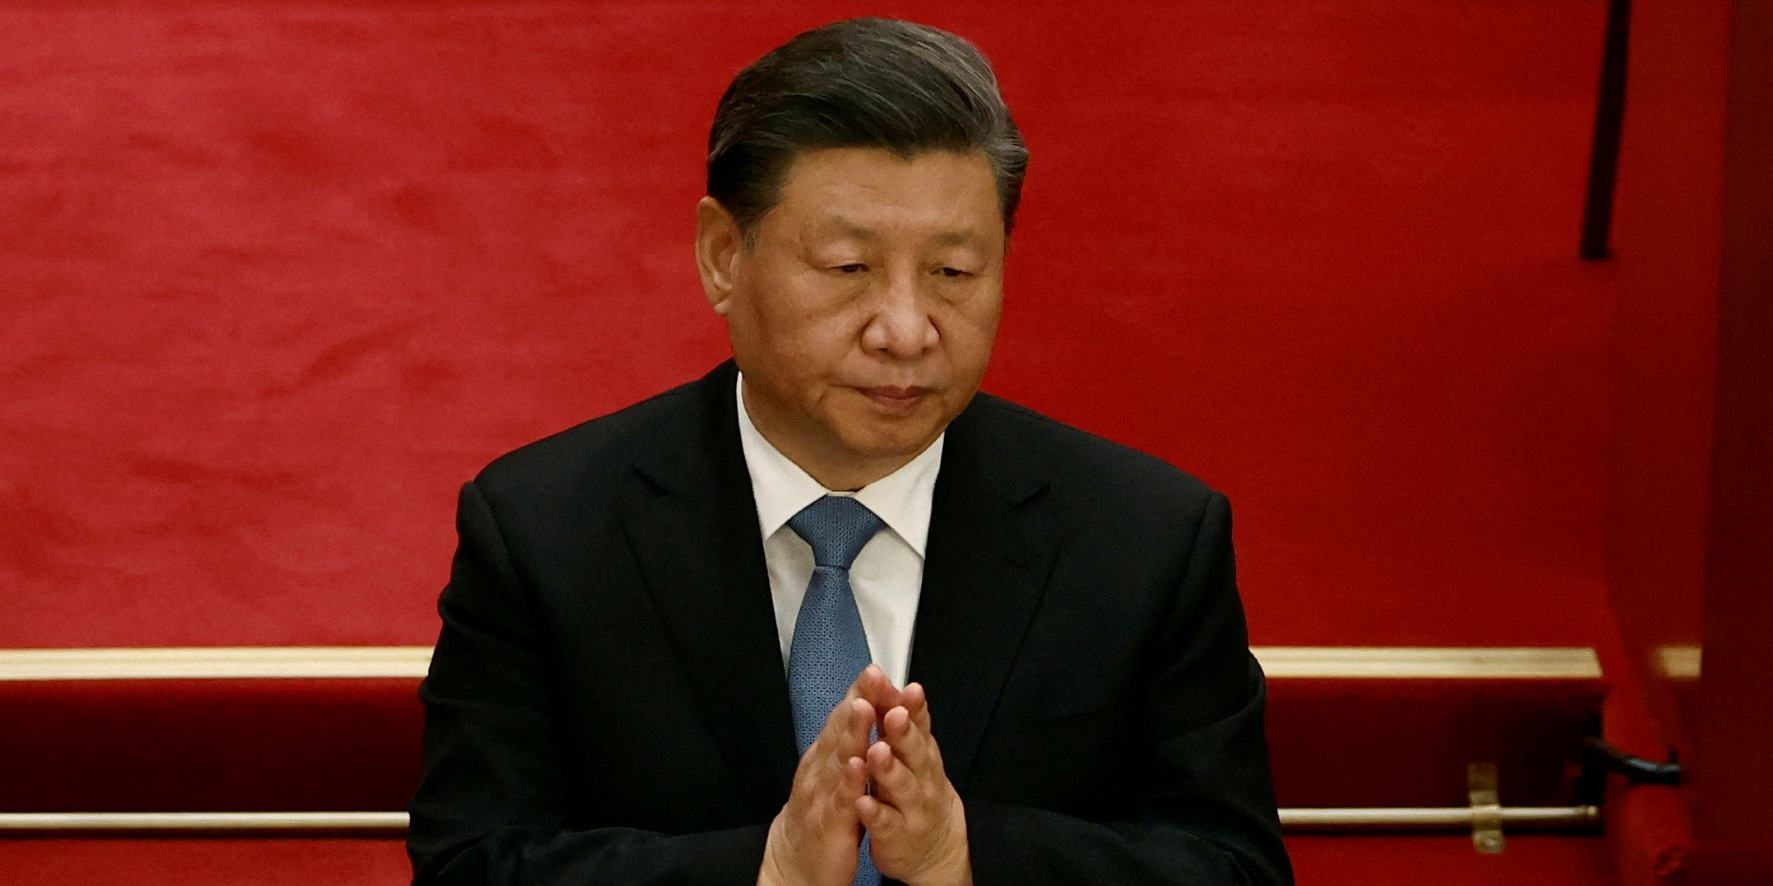 La Chine « ne doit compter que sur elle-même » pour sa production industrielle et agricole, affirme Xi Jinping